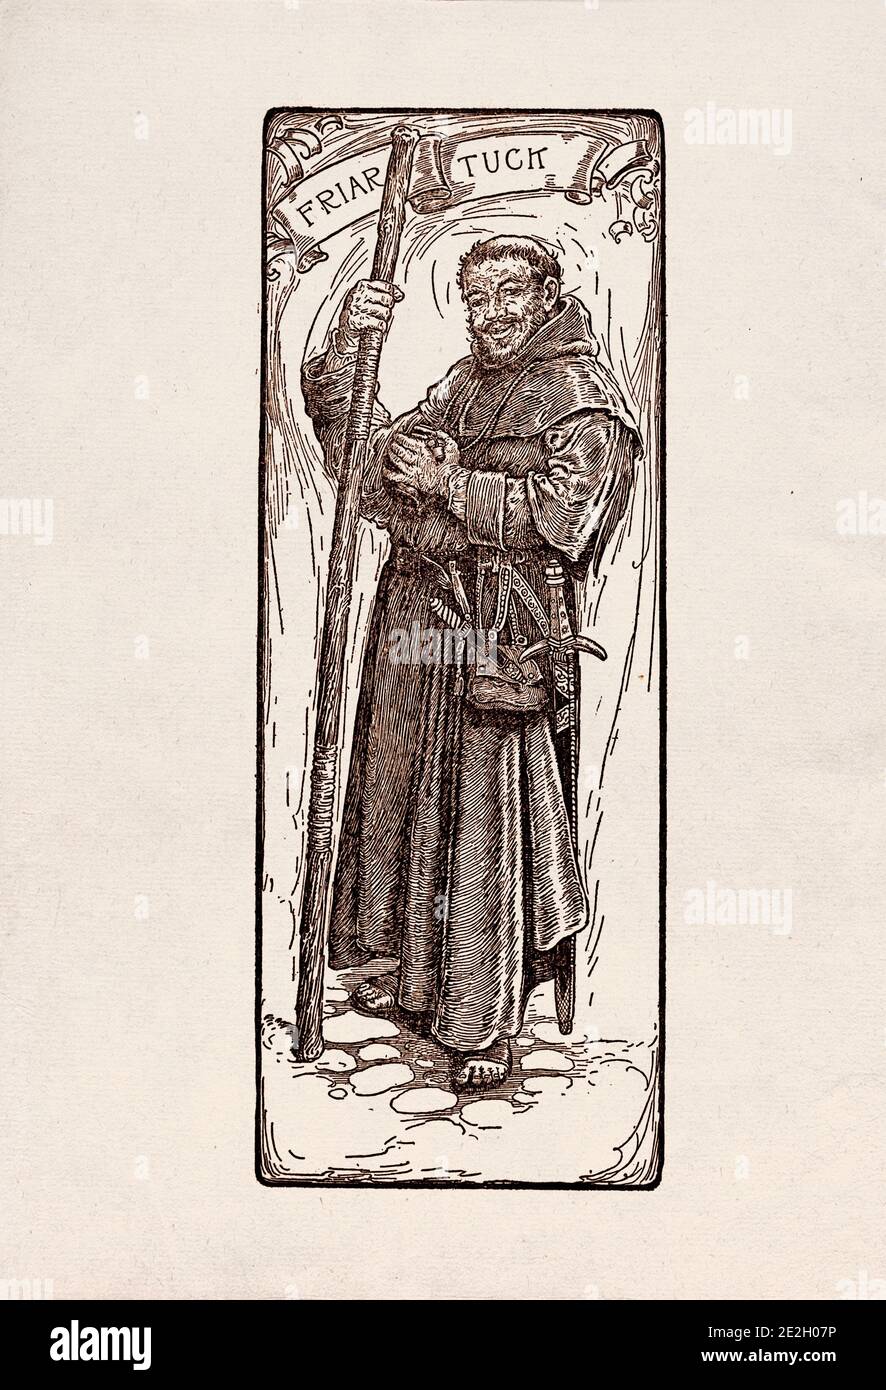 Gravure antique de personnages littéraires du folklore anglais des légendes Robin des Bois. Friar Tuck. Par Louis Rhead. 1912 Banque D'Images